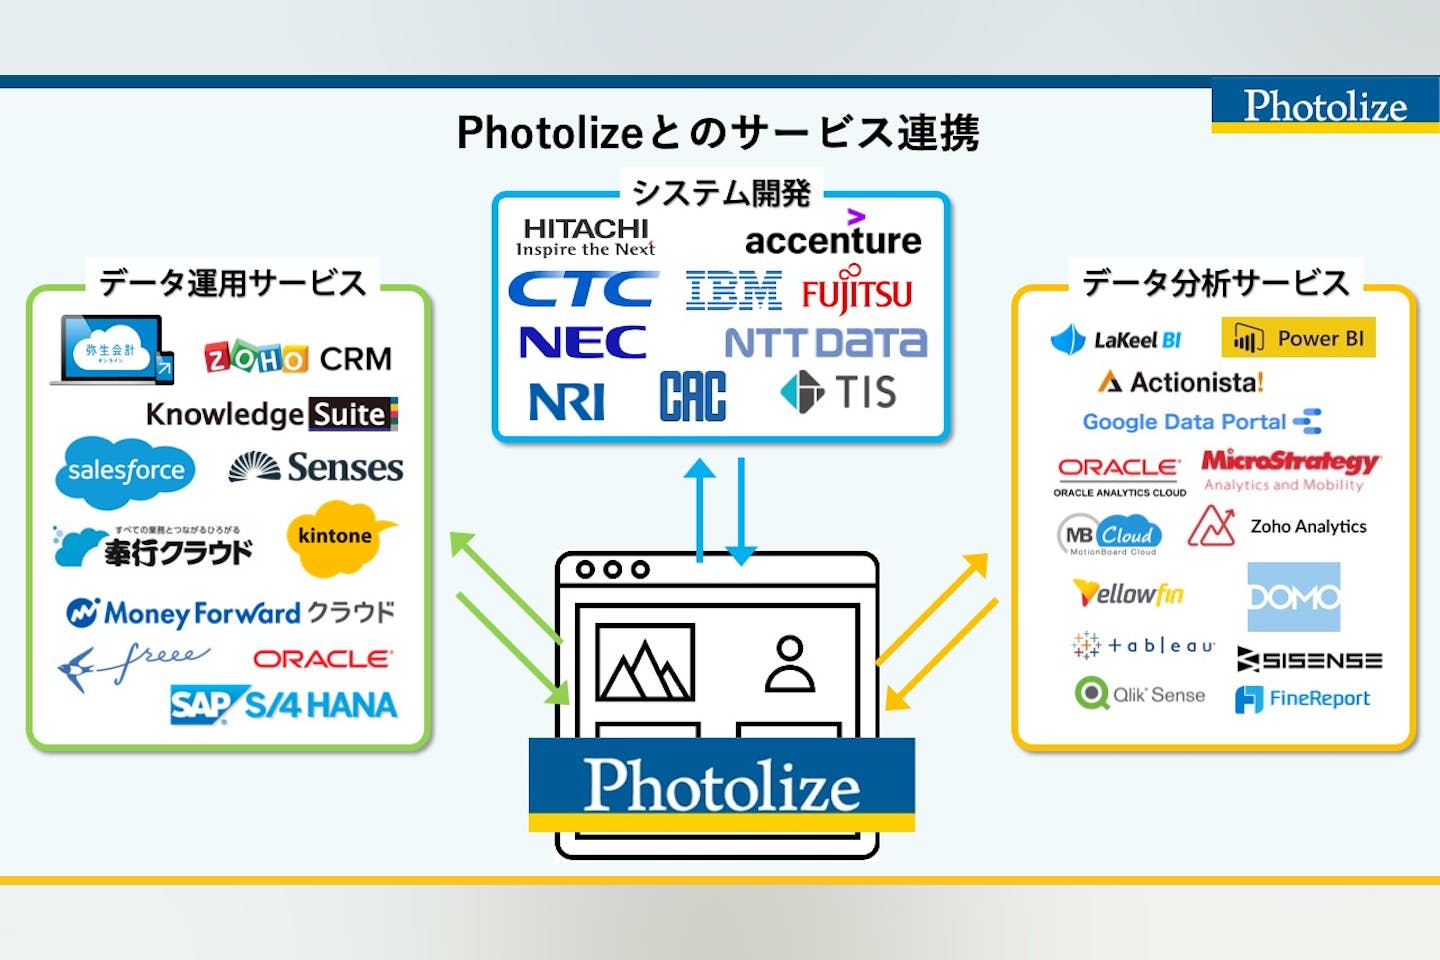 Photolizeをインターフェースとして利用して様々な企業とアライアンスをしていきたいです。